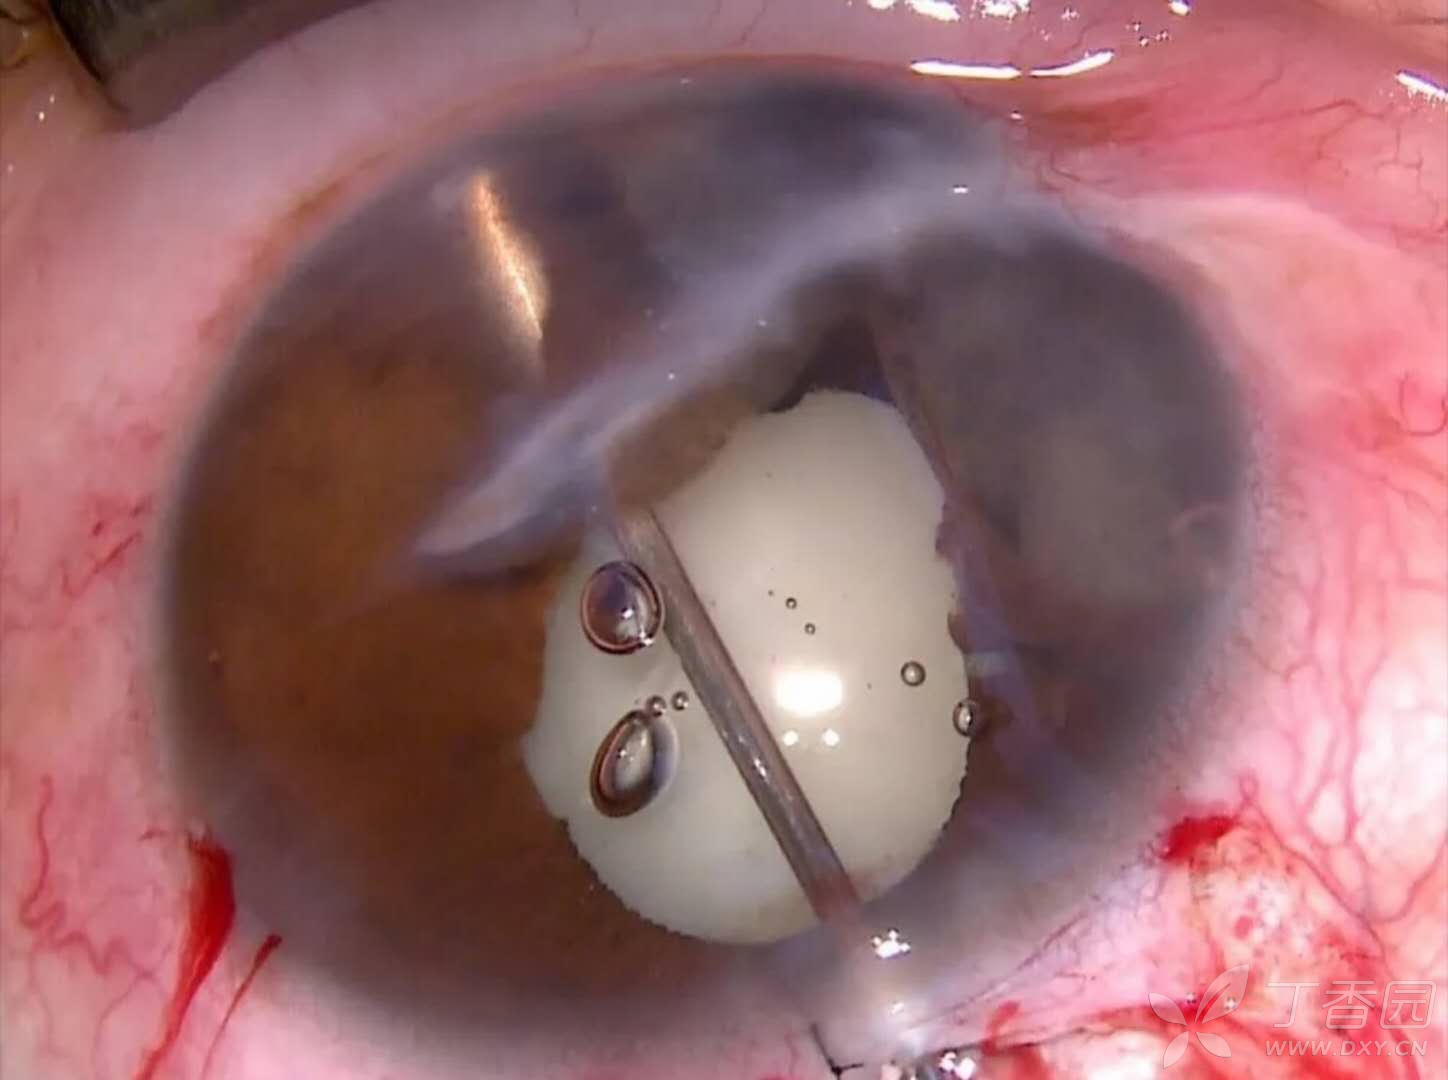 左眼角膜中央斜行穿通伤瘢痕,下方前房内约2/5虹膜囊肿